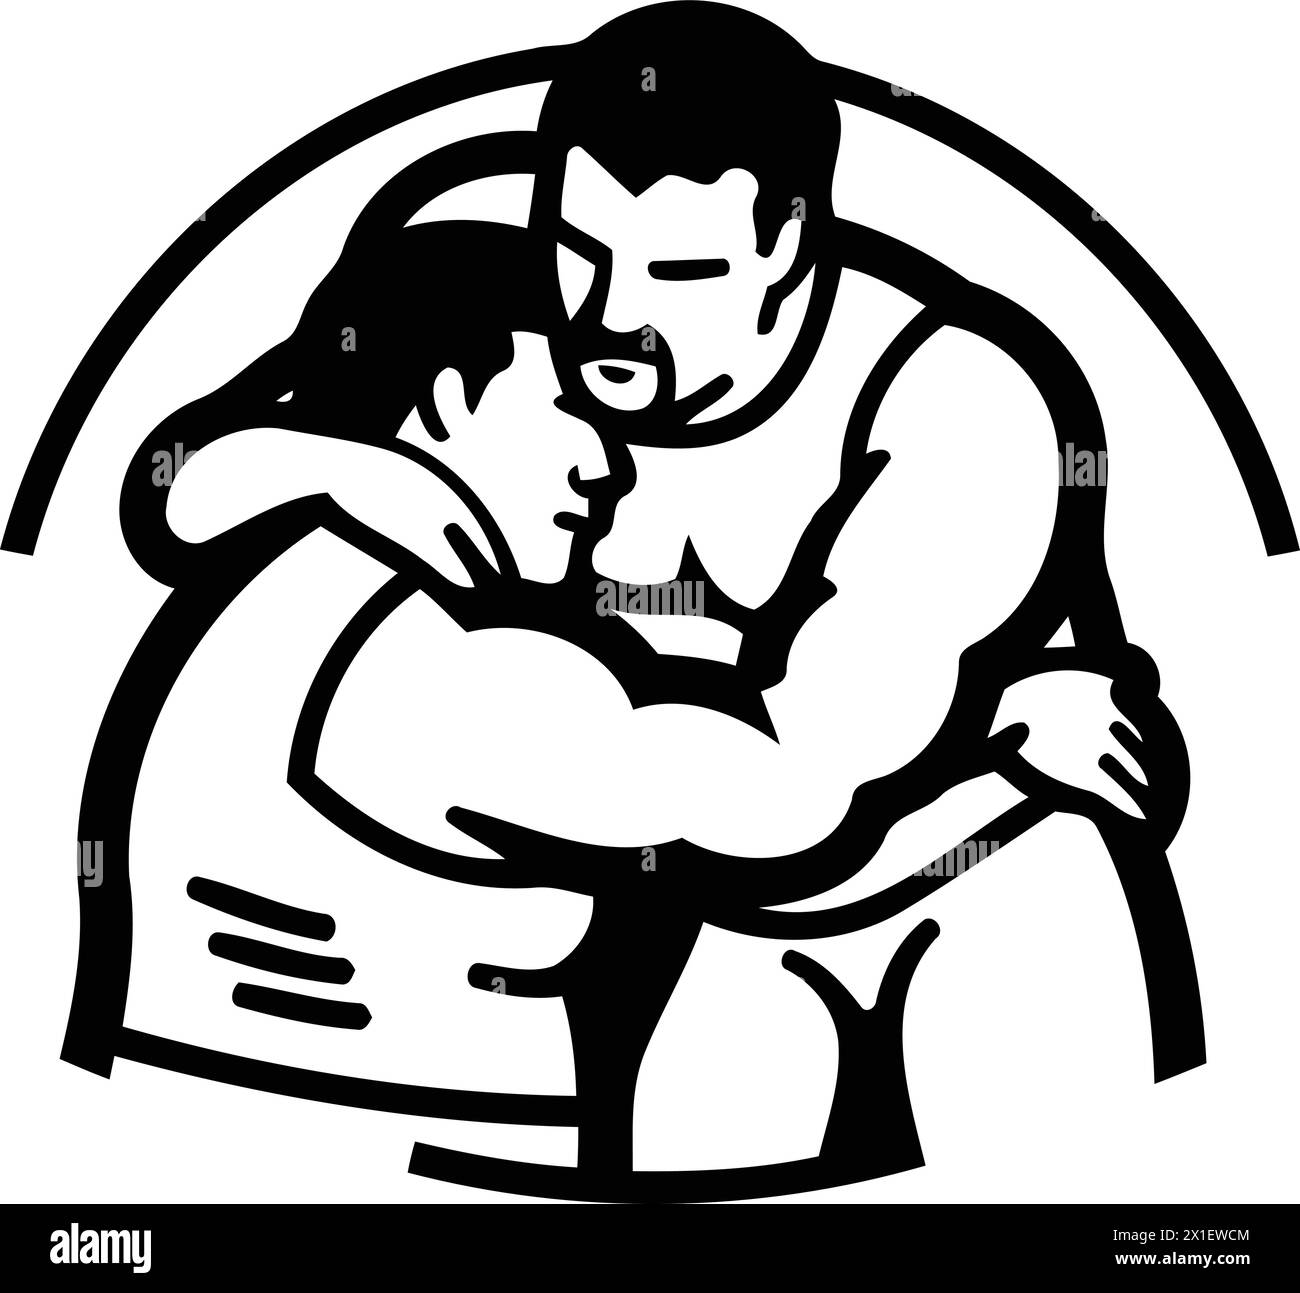 Vektor-Illustration eines fetten Mannes, der seine Tochter umarmt. Stock Vektor